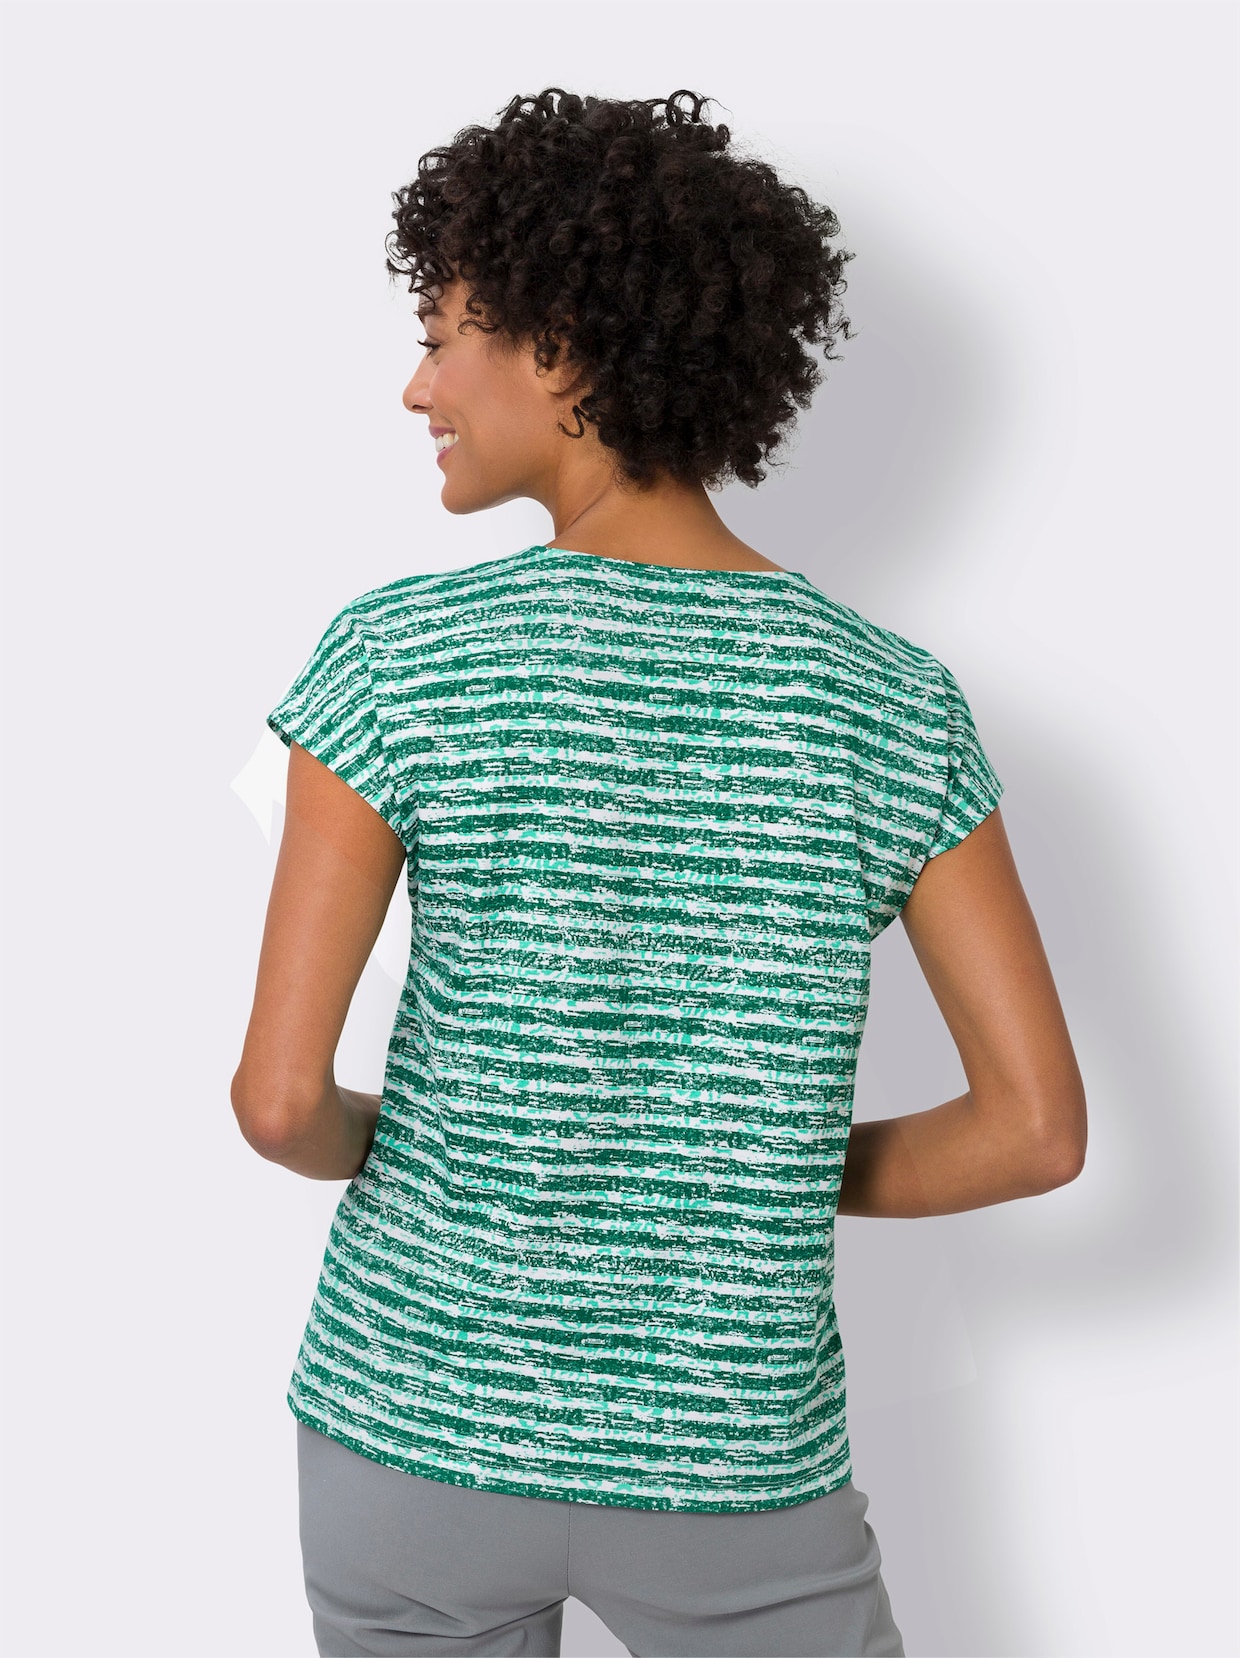 Tričko s krátkým rukávem - zelená-ecru-proužek